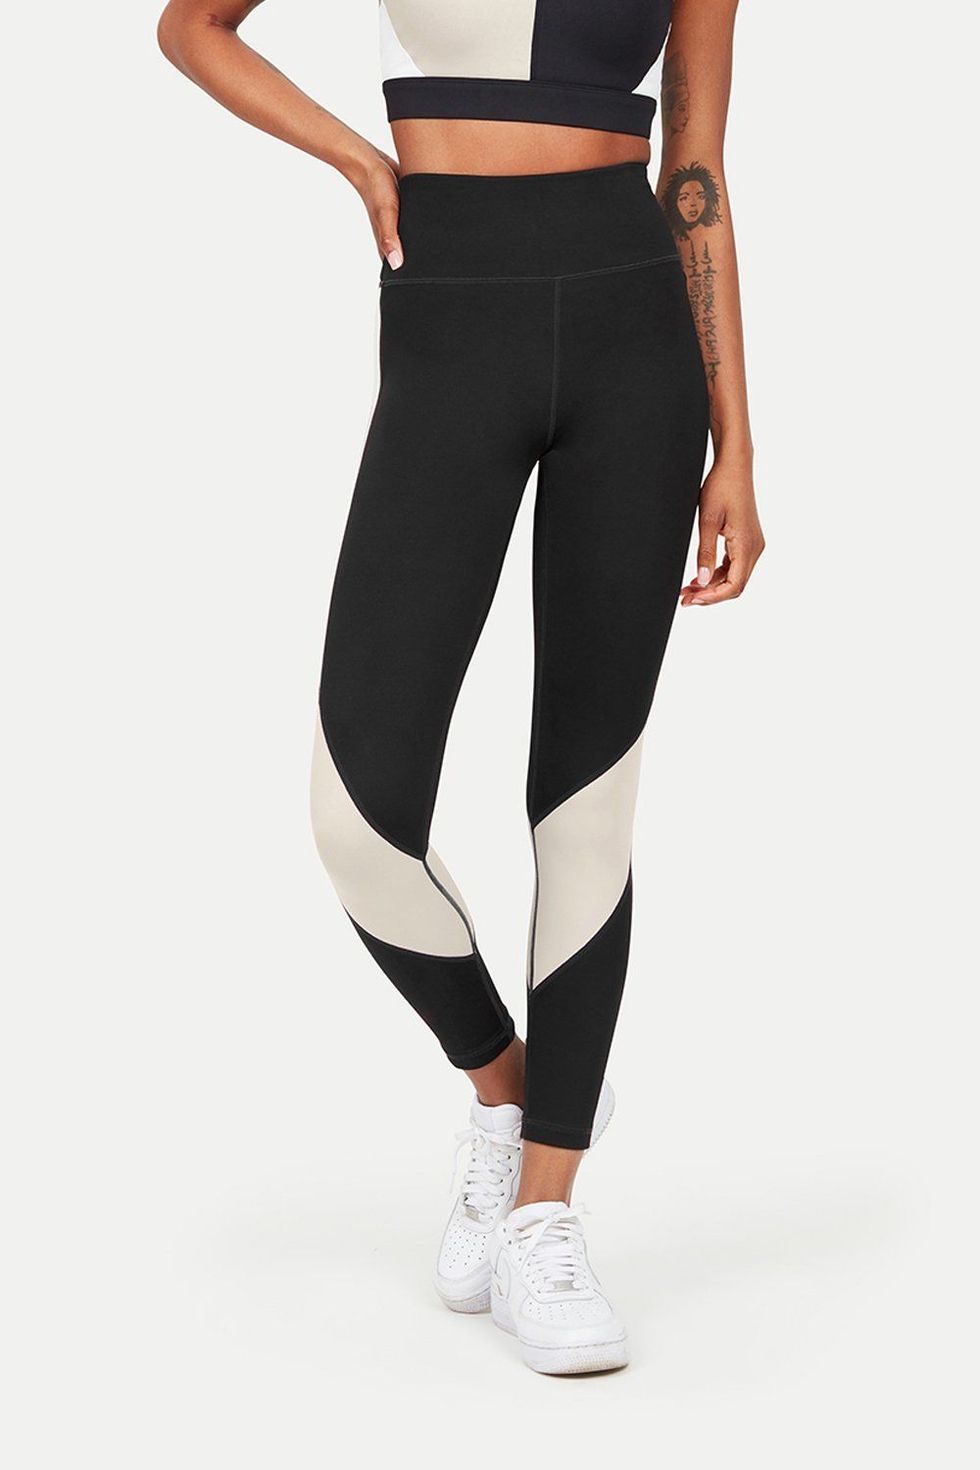 Nike Nike Yoga leggings With Tie Detail in Black